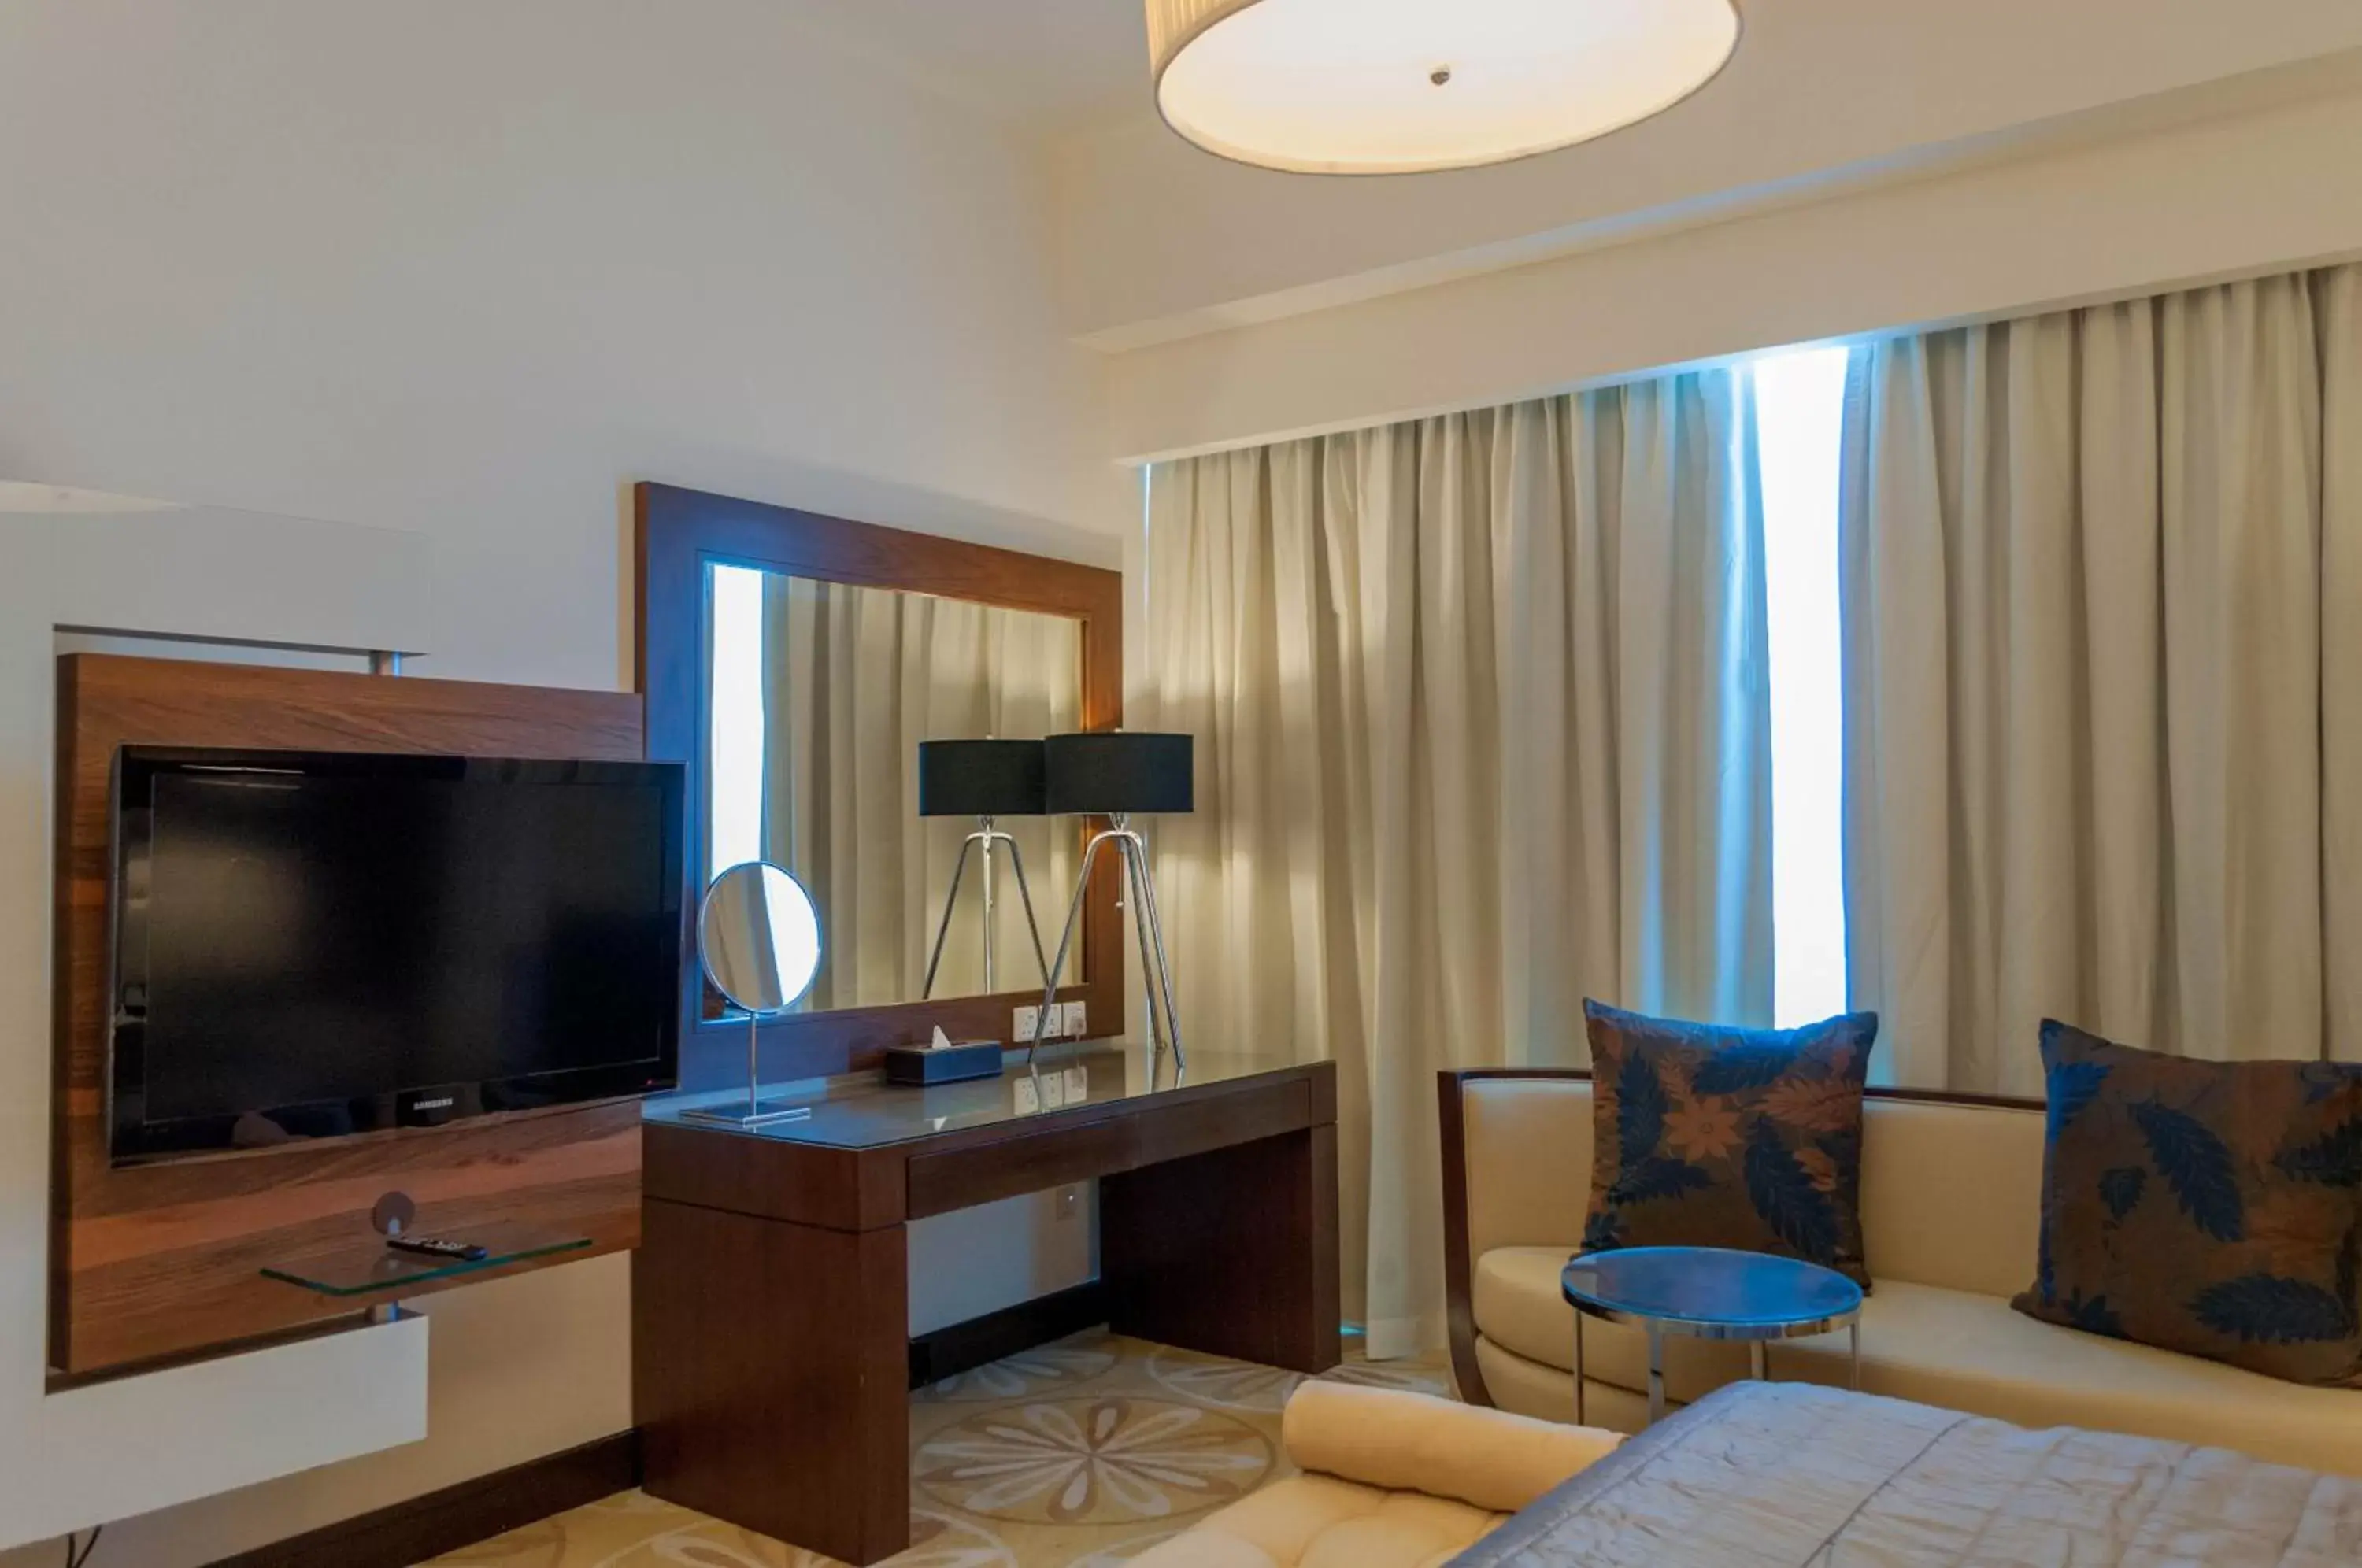 Decorative detail, TV/Entertainment Center in La Suite Dubai Hotel & Apartments